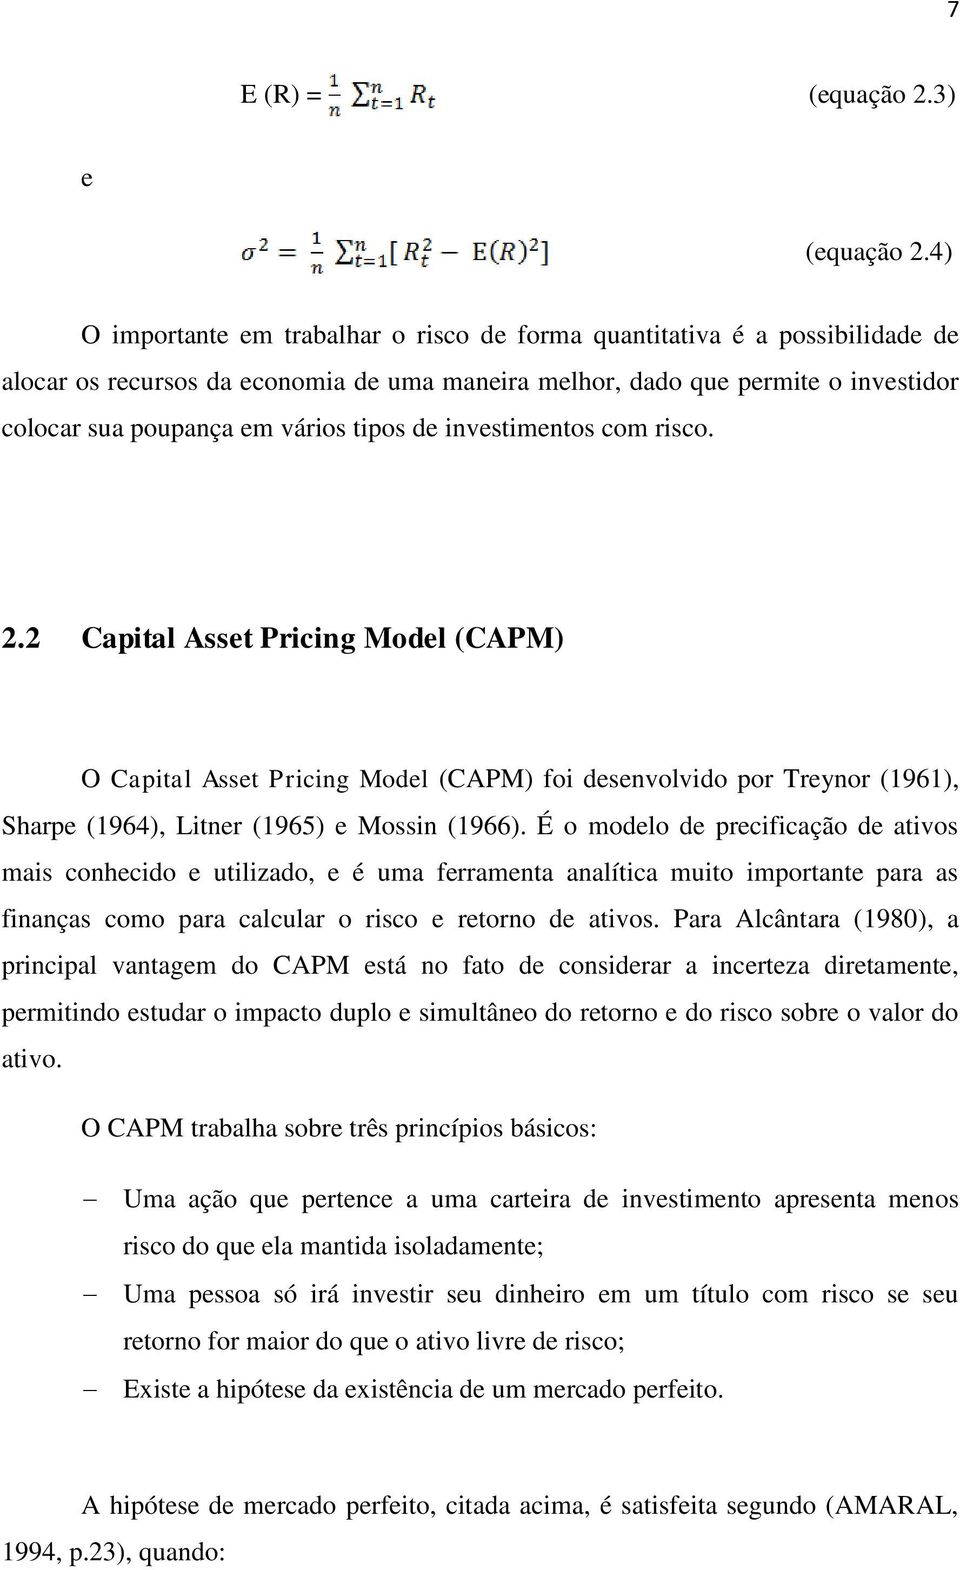 tipos de investimentos com risco. 2.2 Capital Asset Pricing Model (CAPM) O Capital Asset Pricing Model (CAPM) foi desenvolvido por Treynor (1961), Sharpe (1964), Litner (1965) e Mossin (1966).